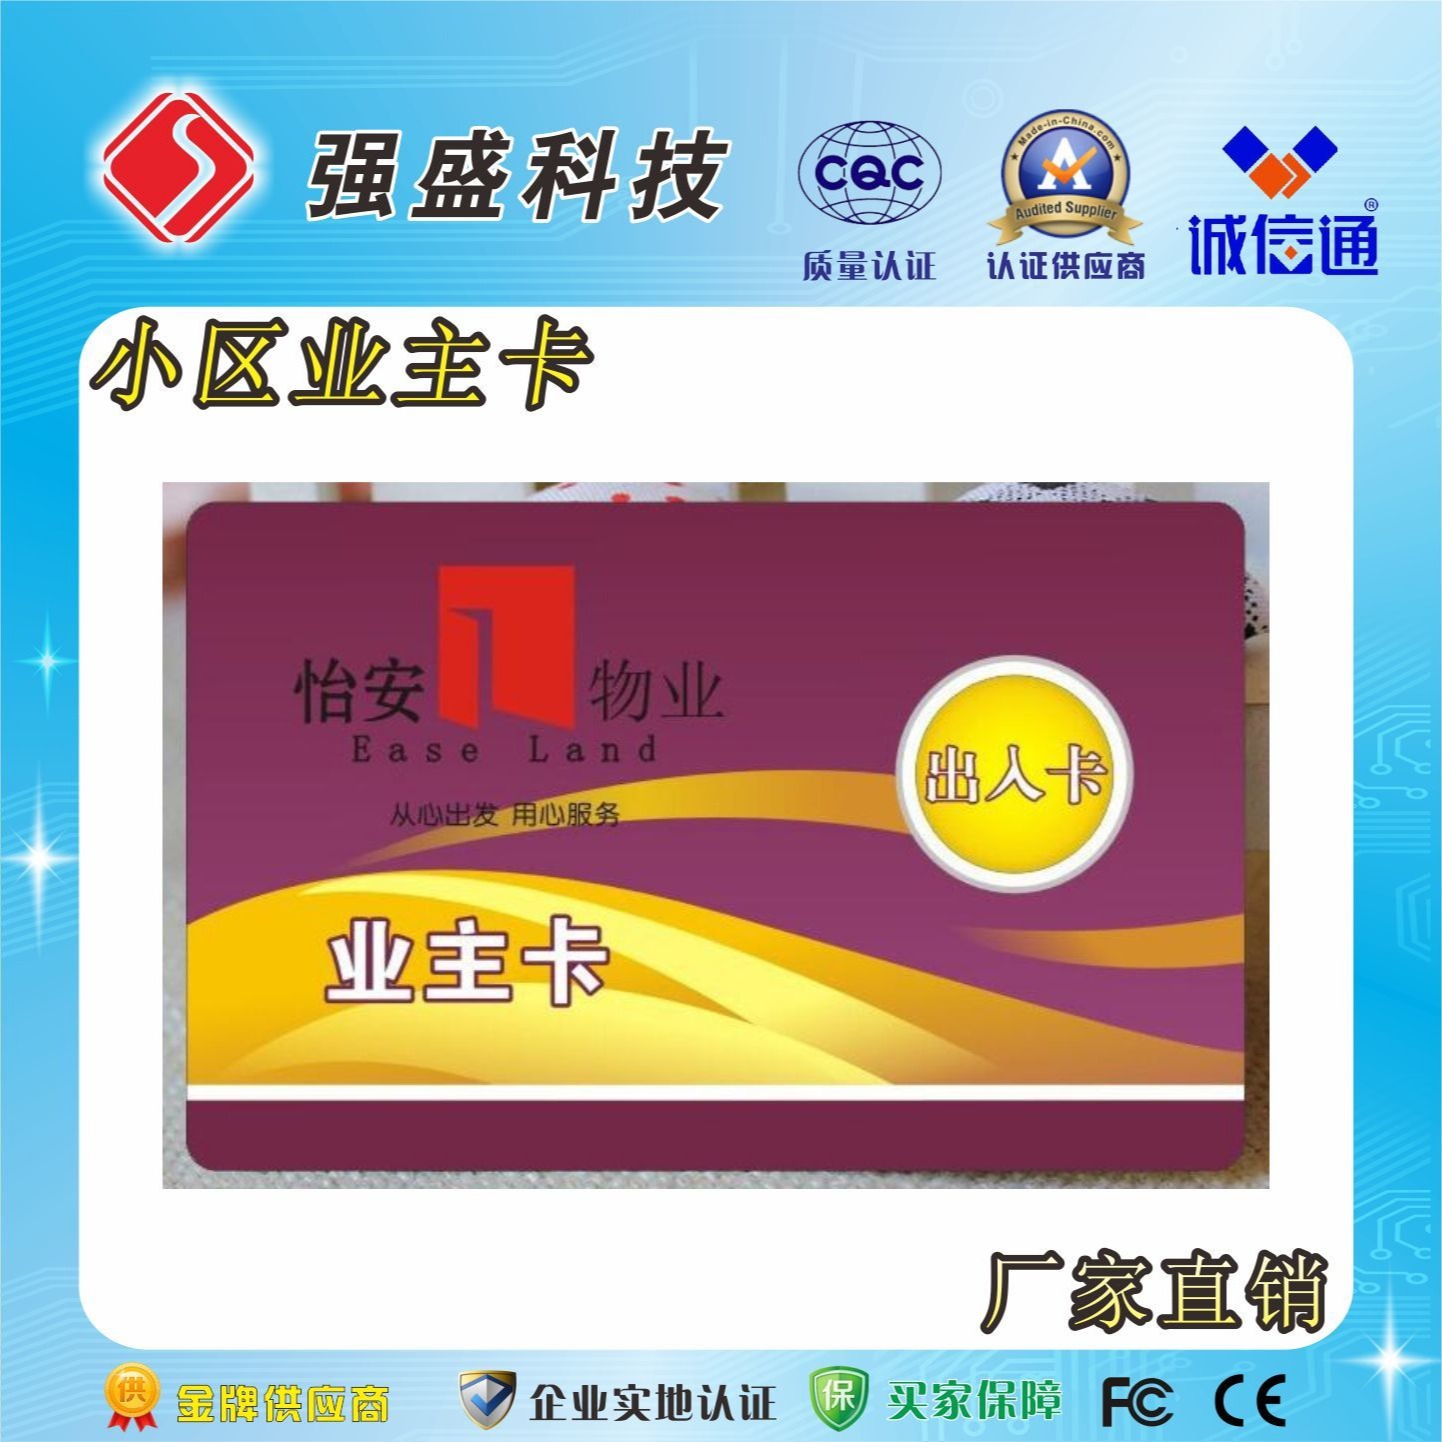 广州越秀地产IC门禁卡供应商、门禁一卡通IC卡制作、业主IC卡生产厂家